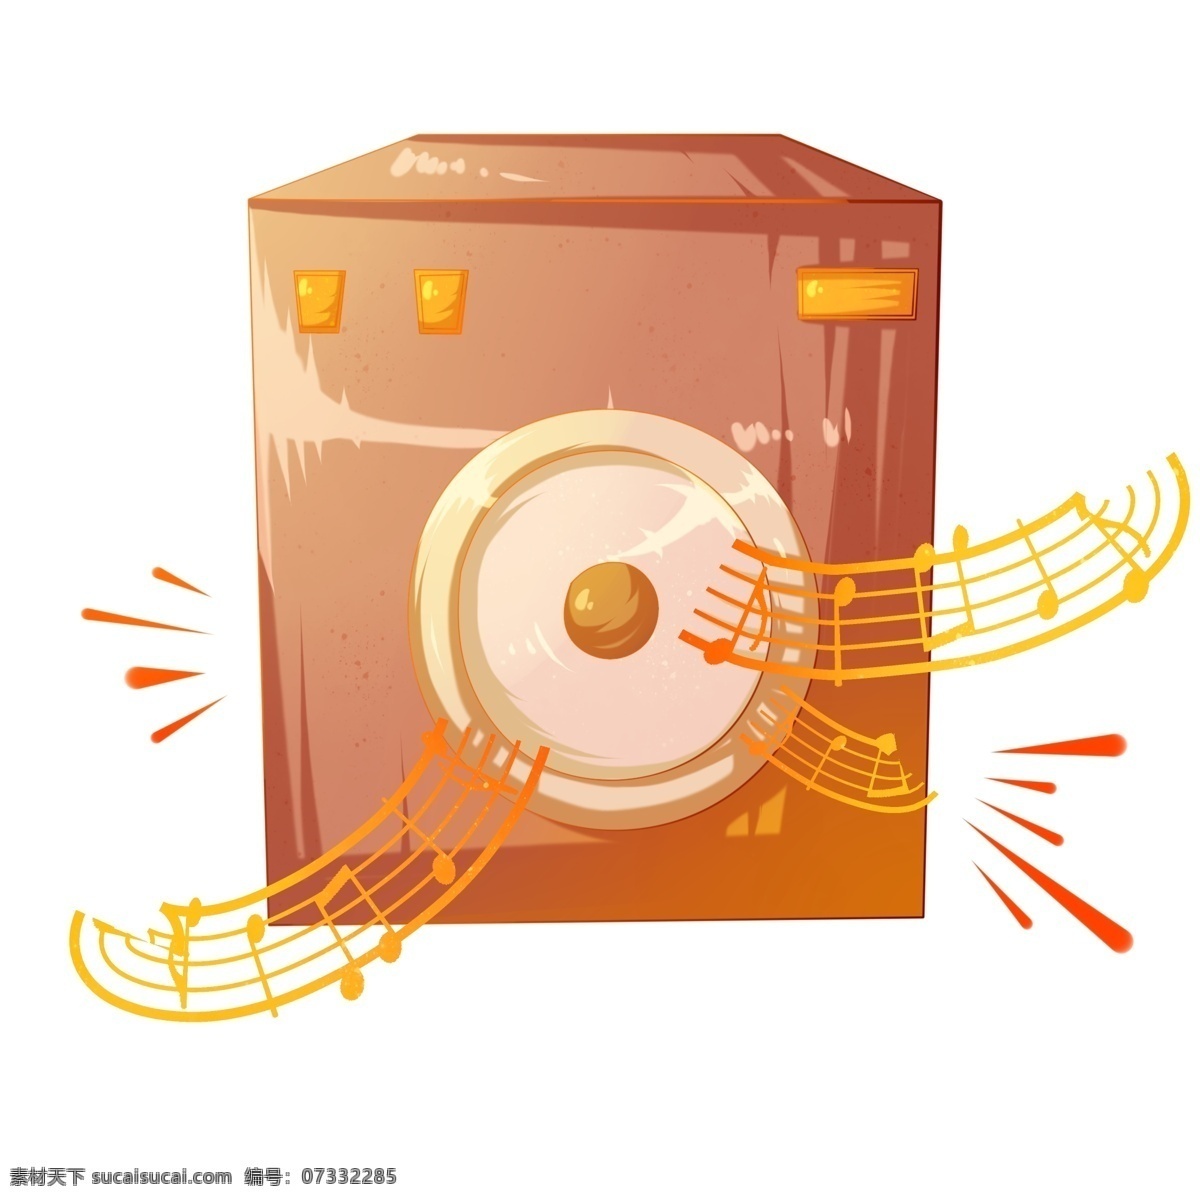 音乐 设备 音箱 插画 金色的音符 卡通插画 音乐插画 音乐演奏 音乐表演 音乐乐器 音乐的音箱